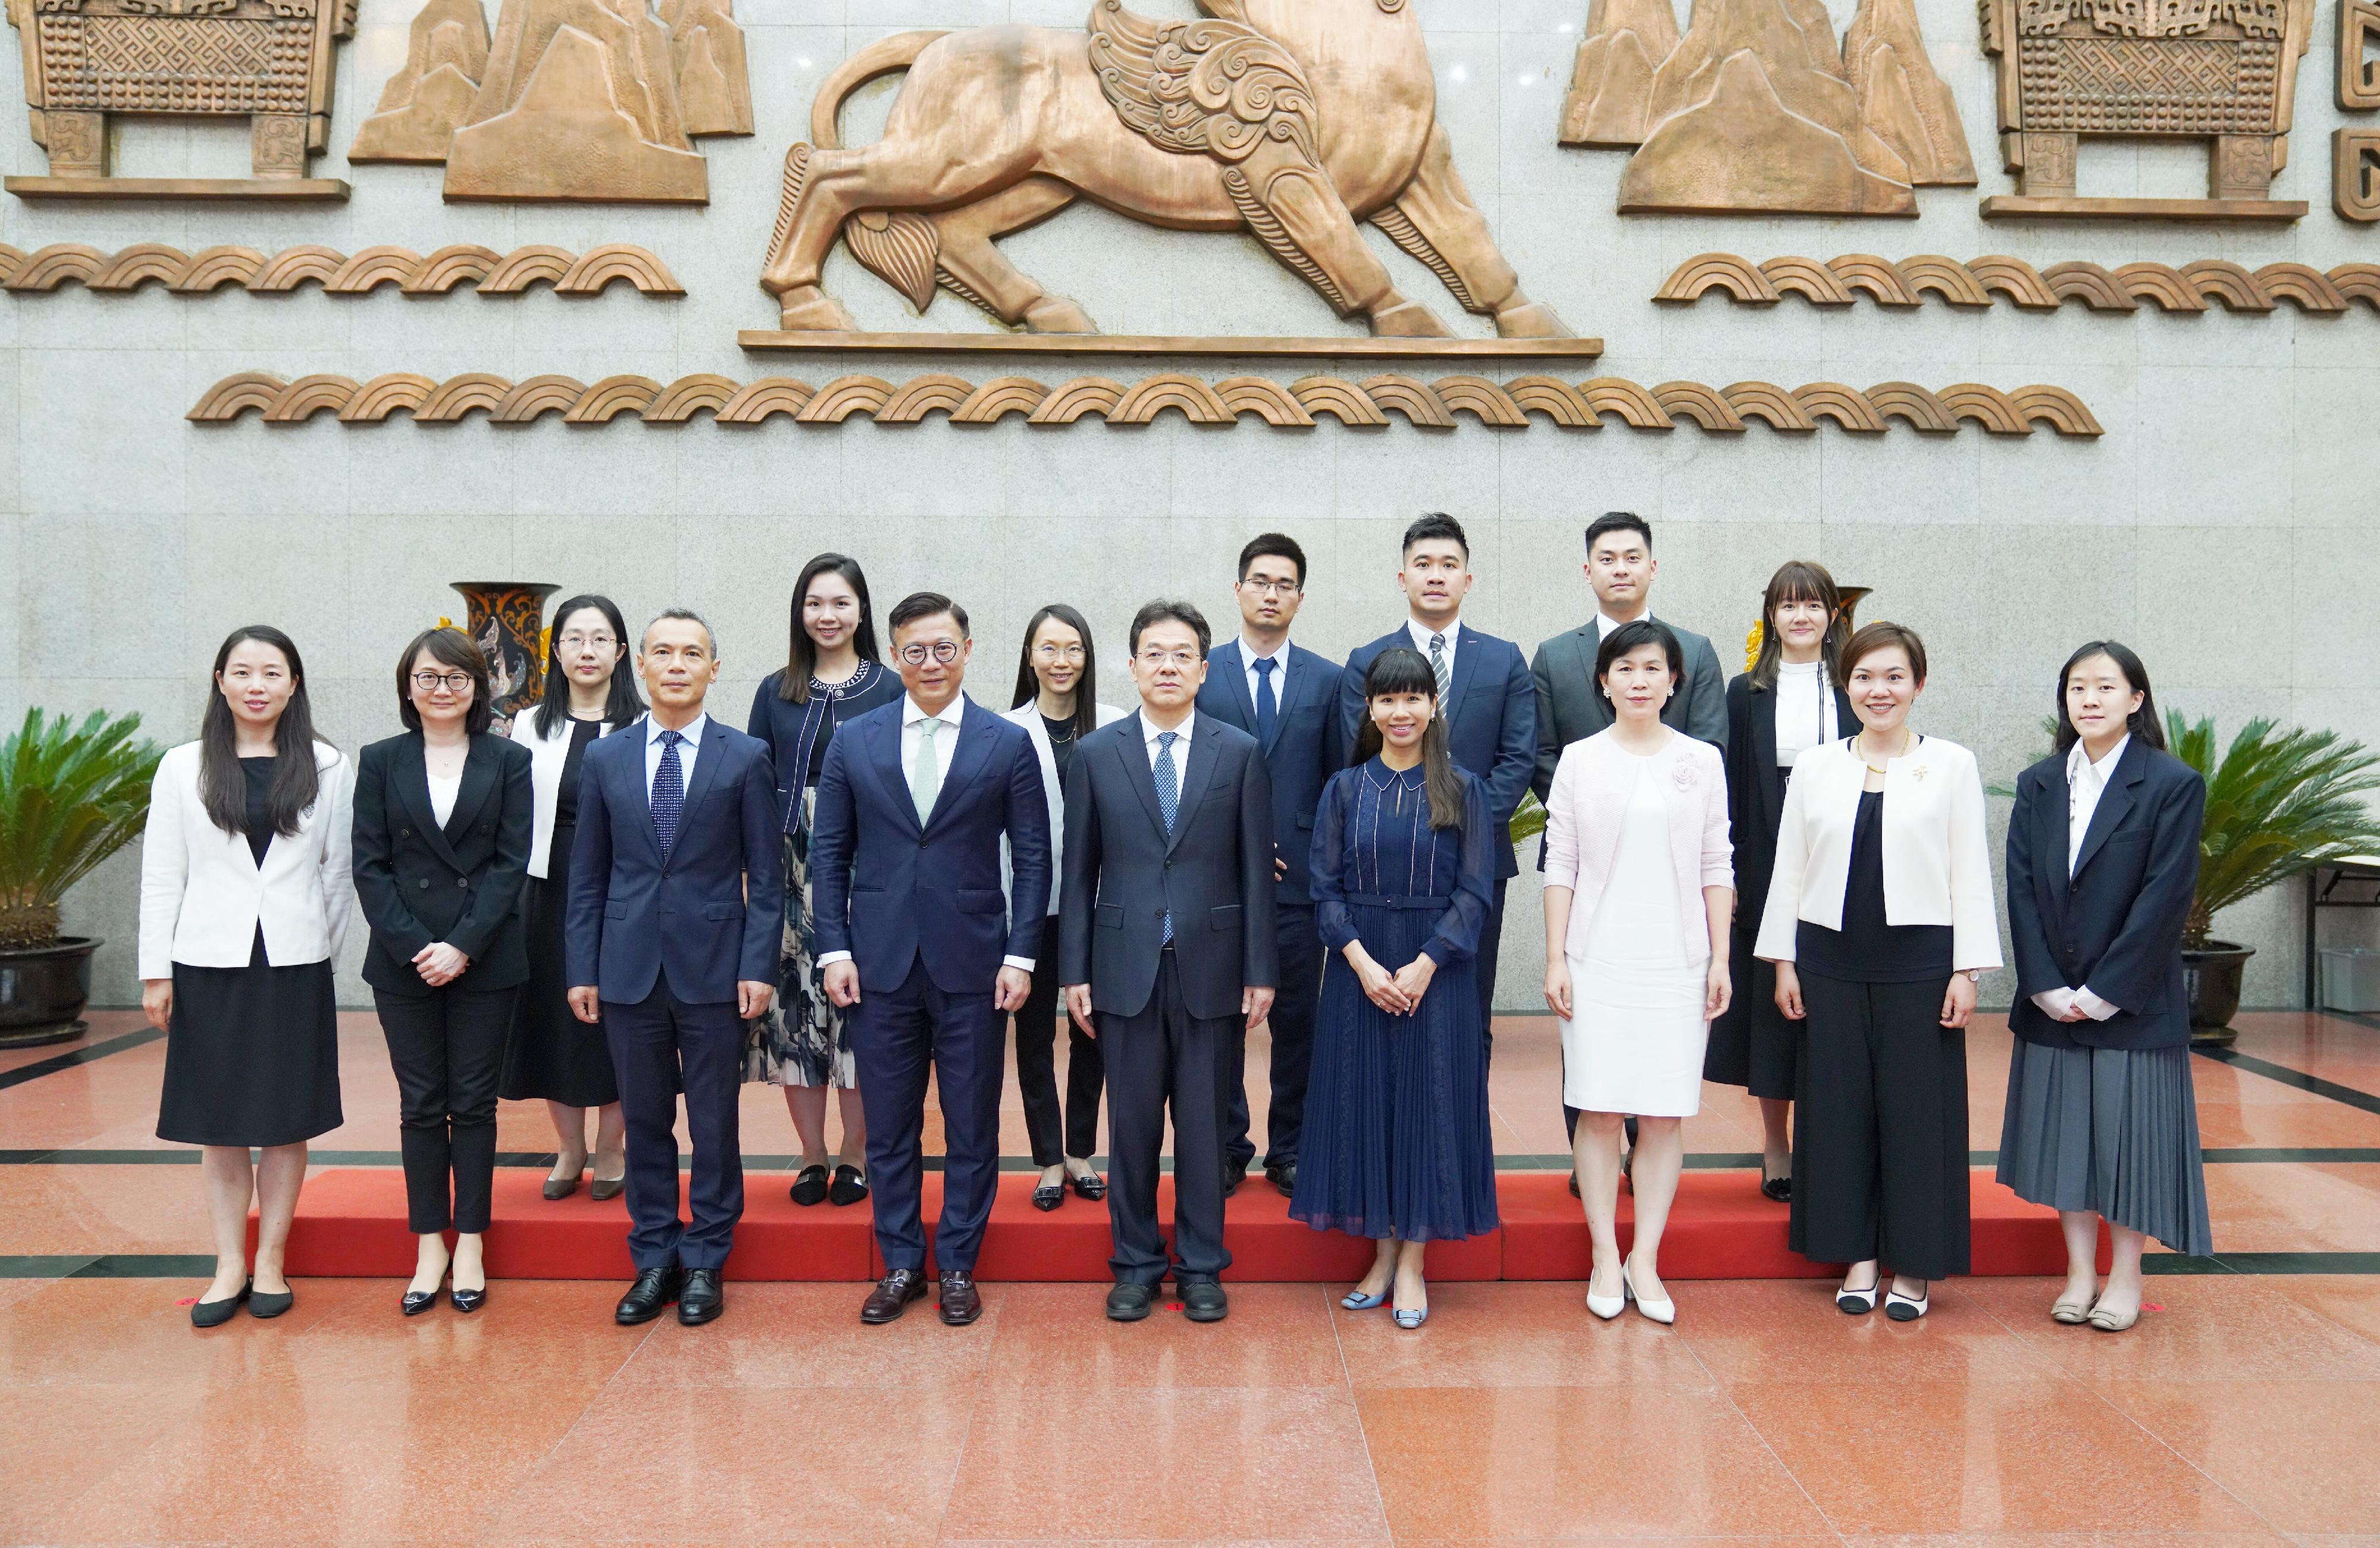 律政司副司长张国钧六月十三日于北京拜访最高人民法院。图示张国钧（前排左四）与最高人民法院常务副院长邓修明（前排中）及其他高层人员合照。
